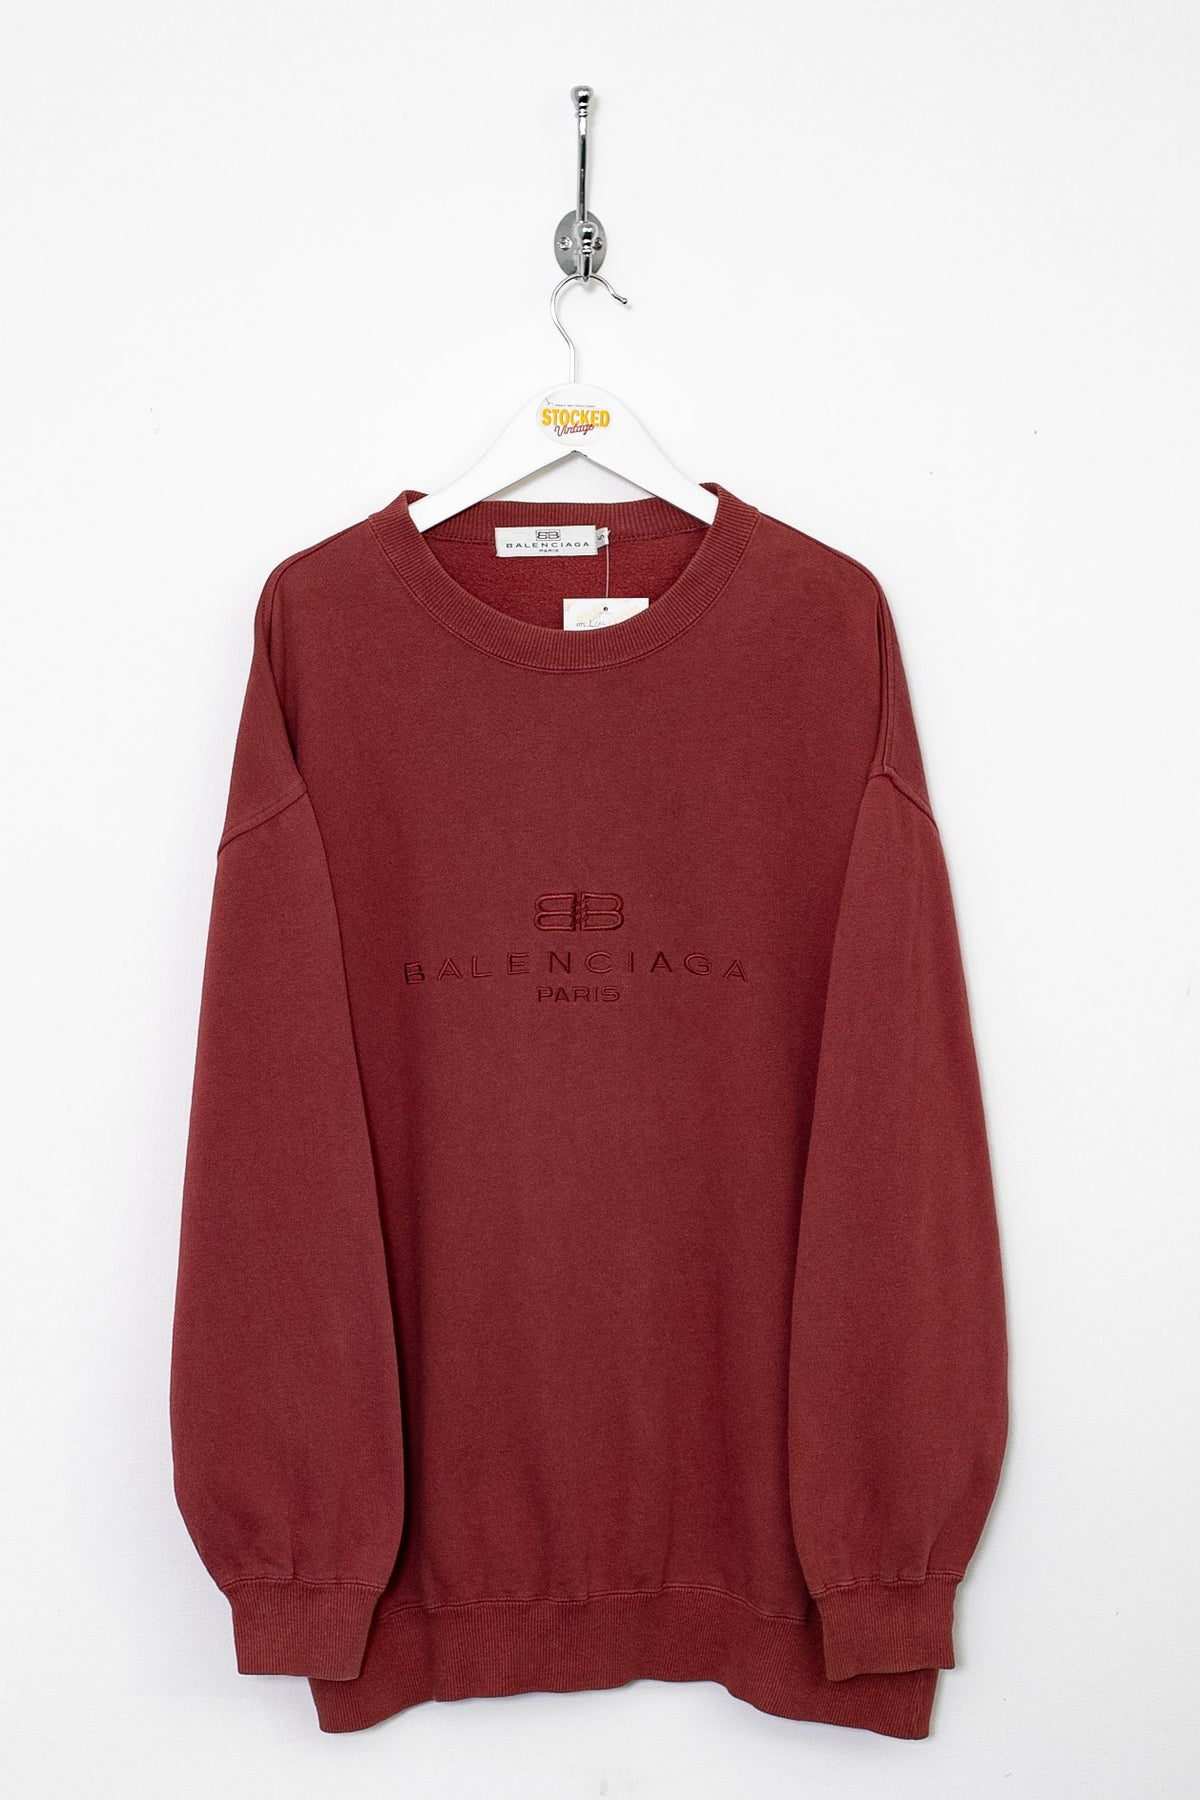 90s Balenciaga Sweatshirt (XL)